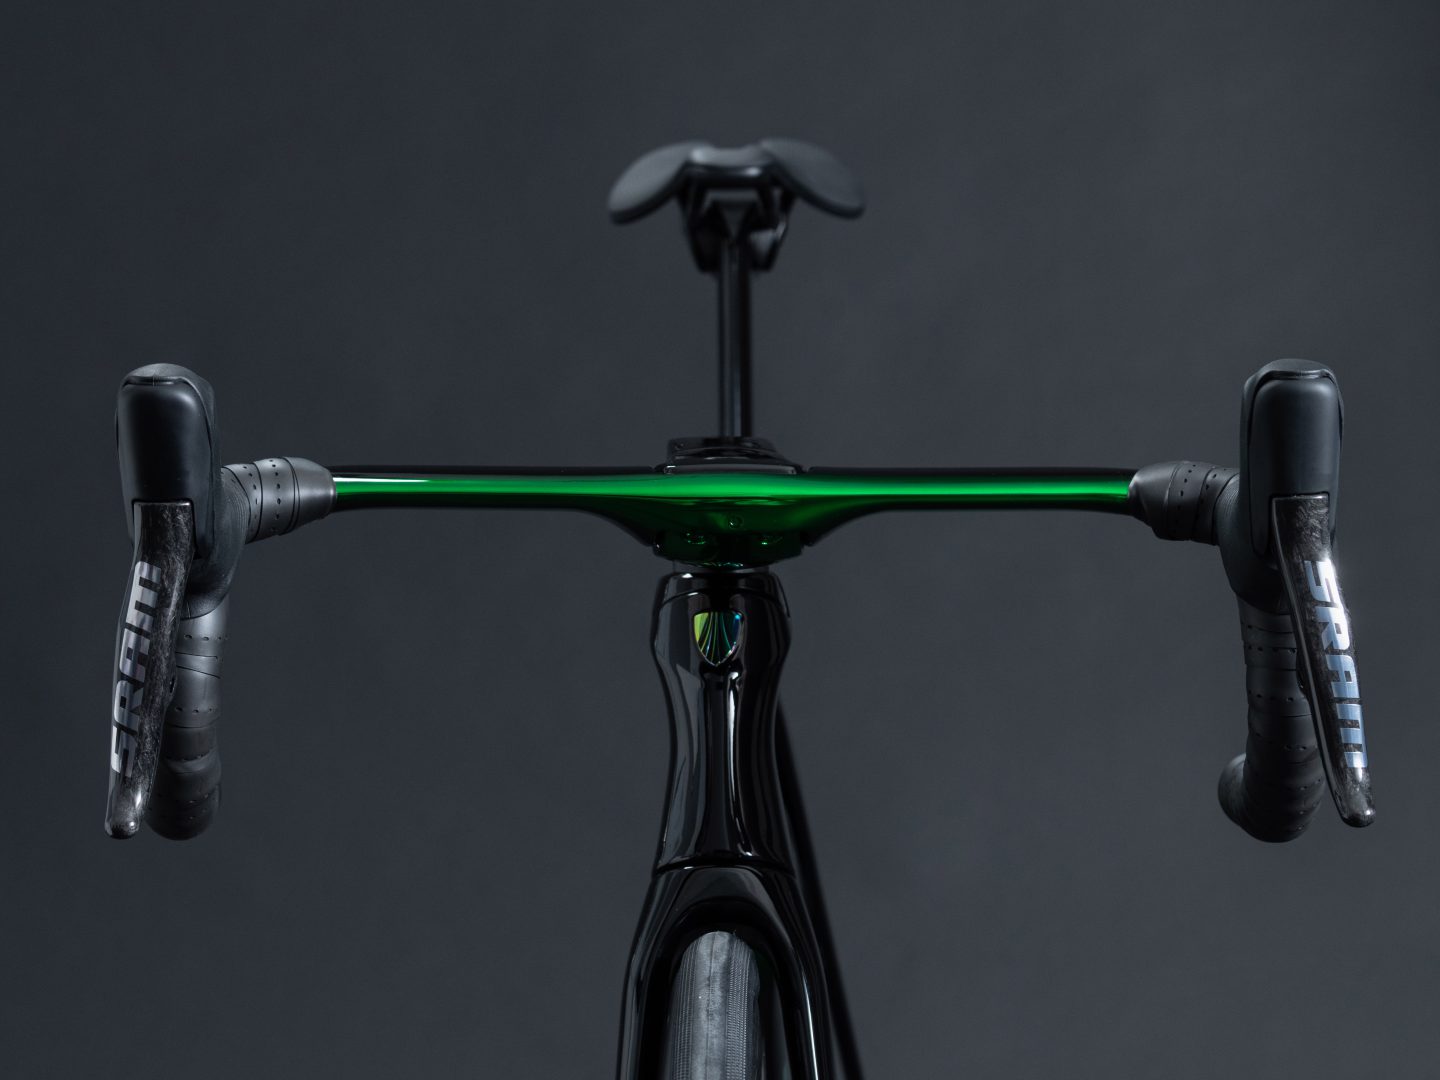 Manubrio en verde cromático para igualar el color de la bici.